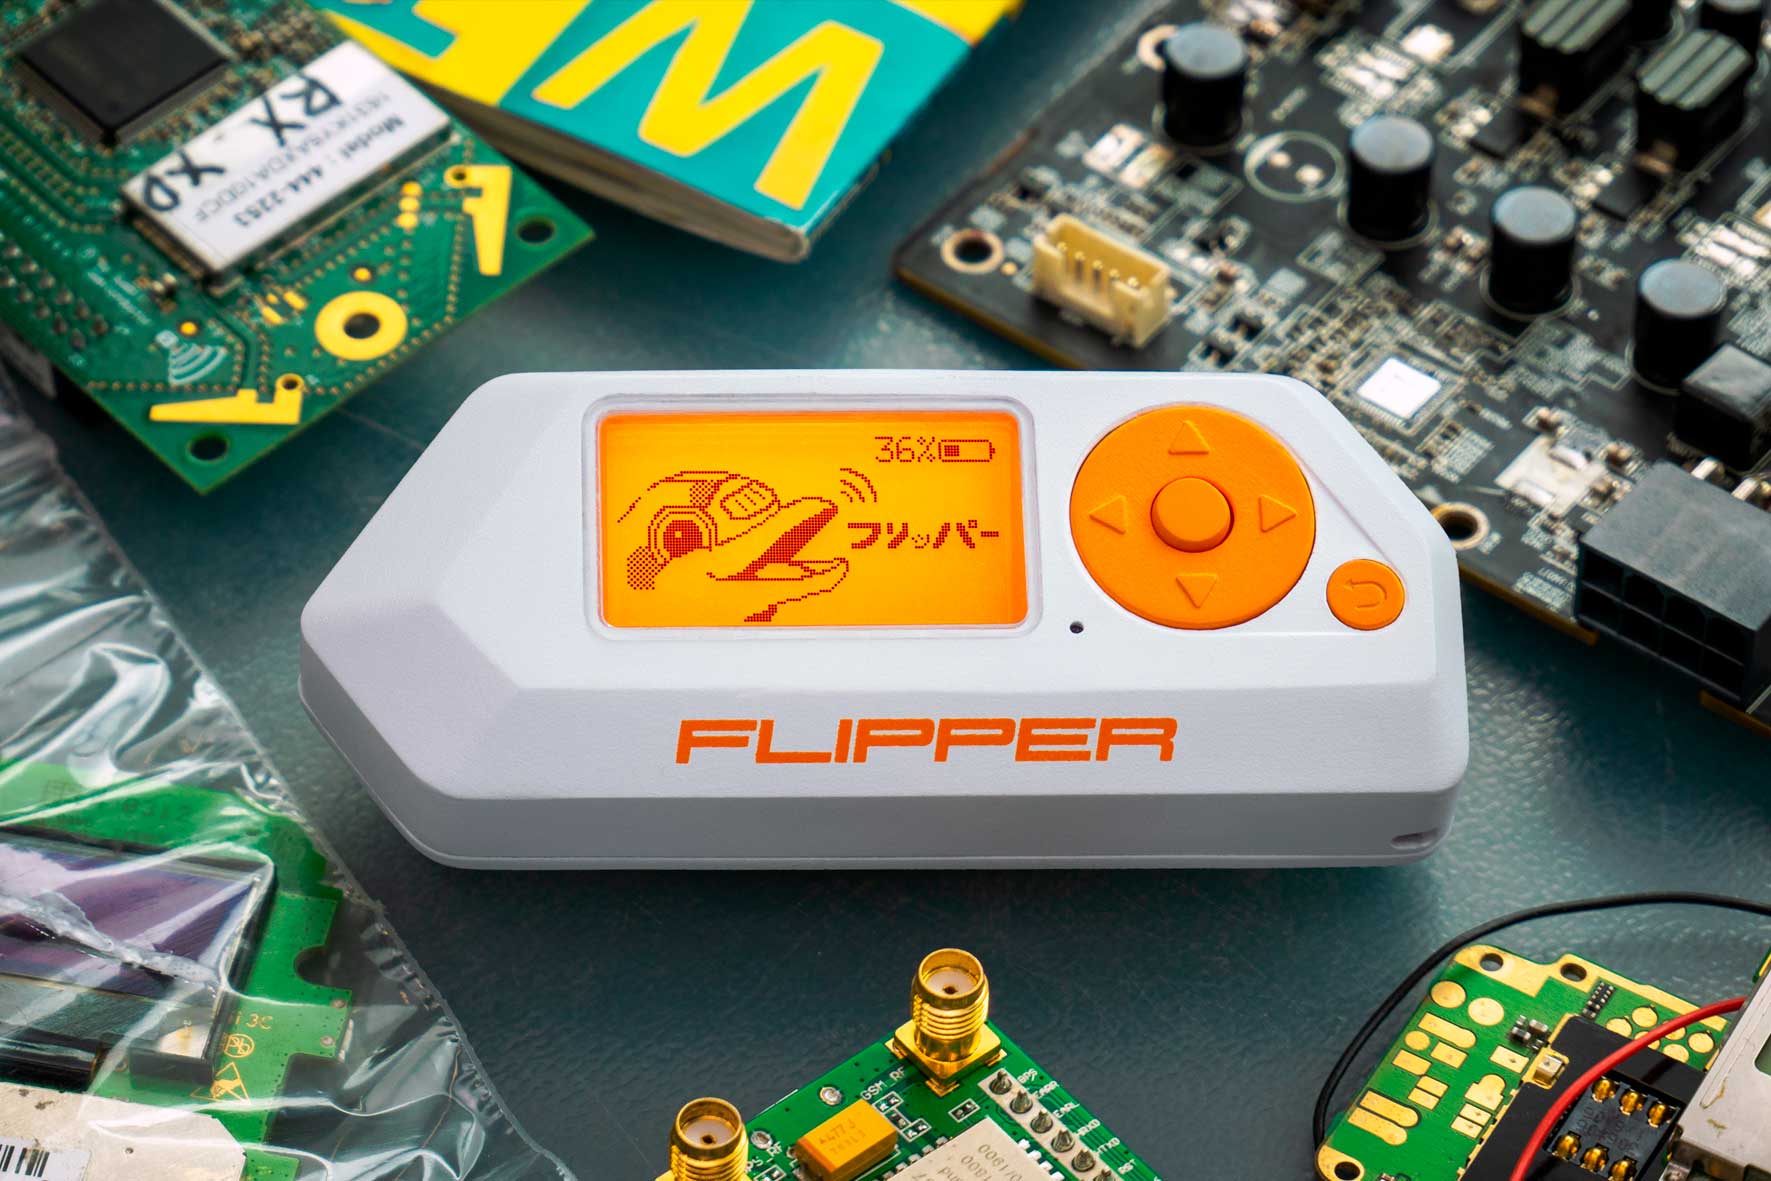 Parlem de Flipper Zero, el tamagotxi per fer hacking ètic, a L’Altra Ràdio